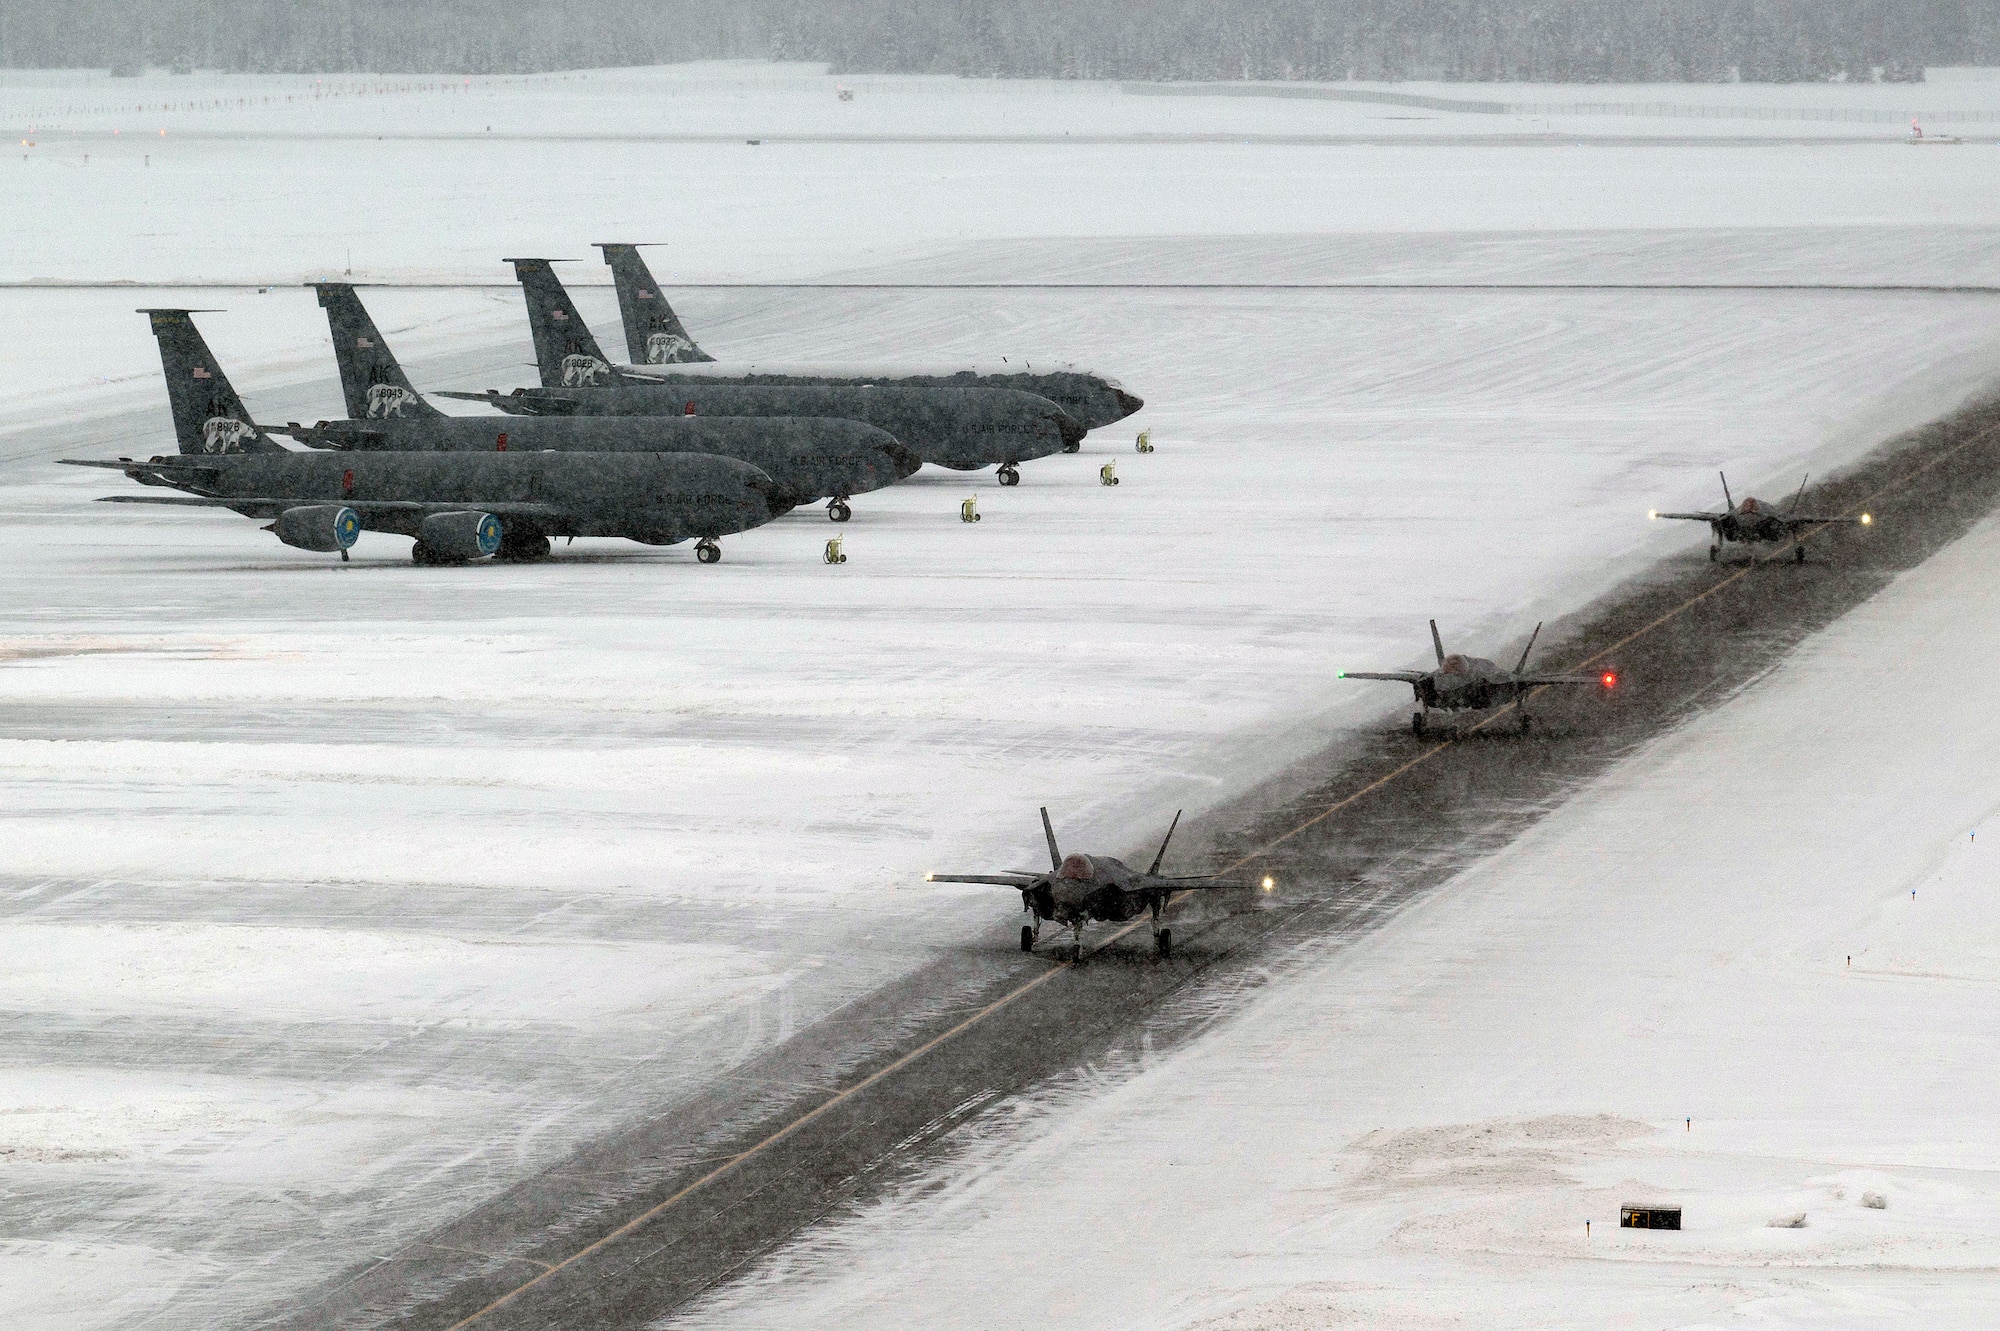 Three F-35A Lightning IIs taxi on the runway